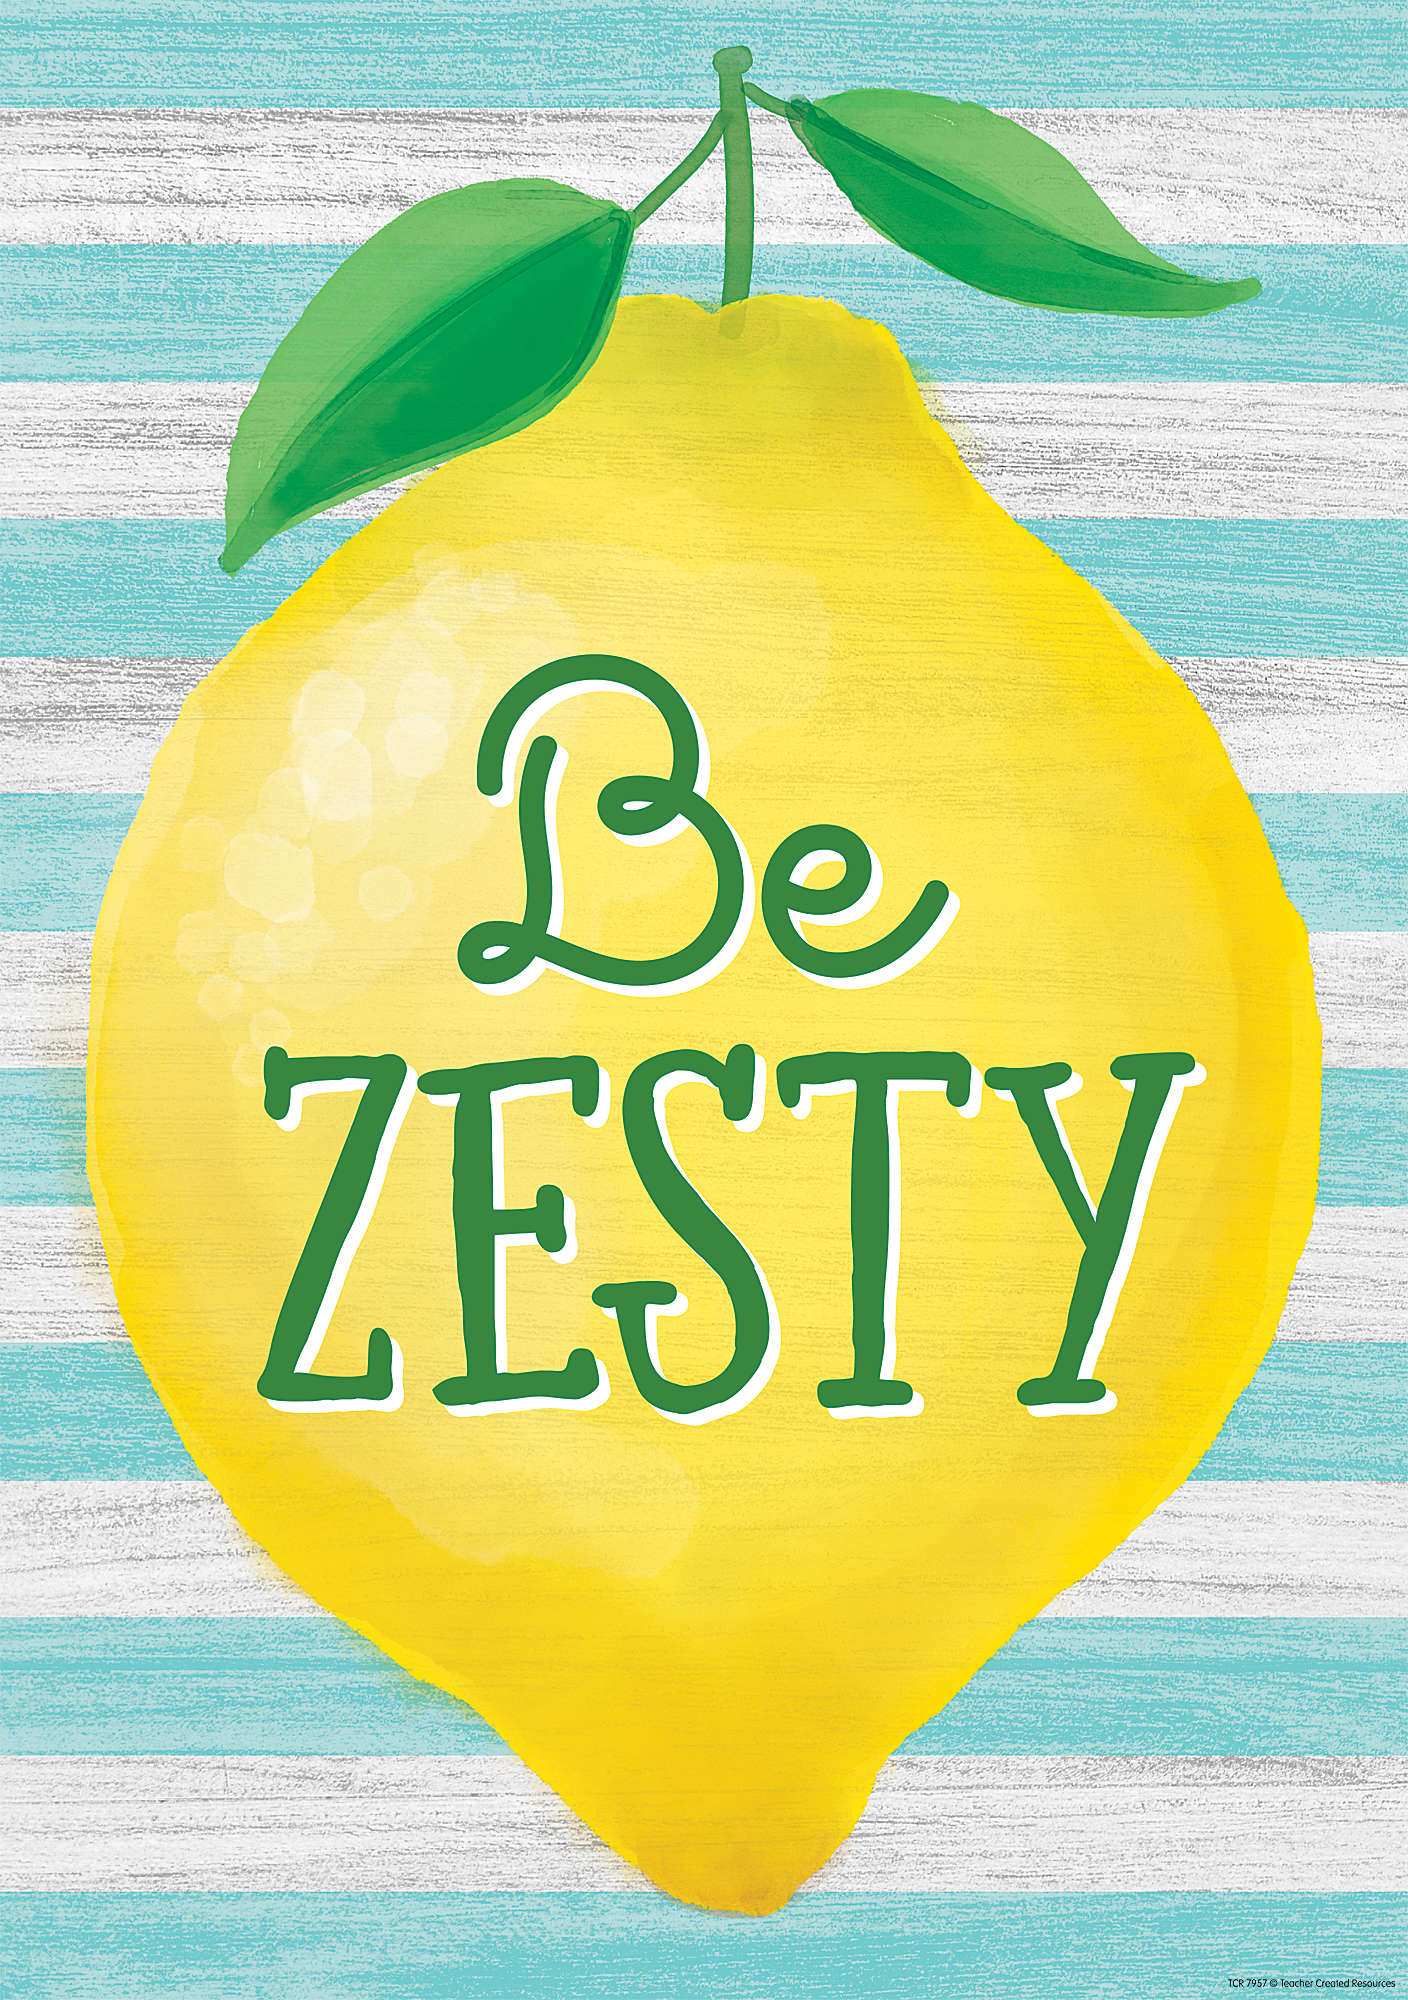 Be Zesty Positive Poster